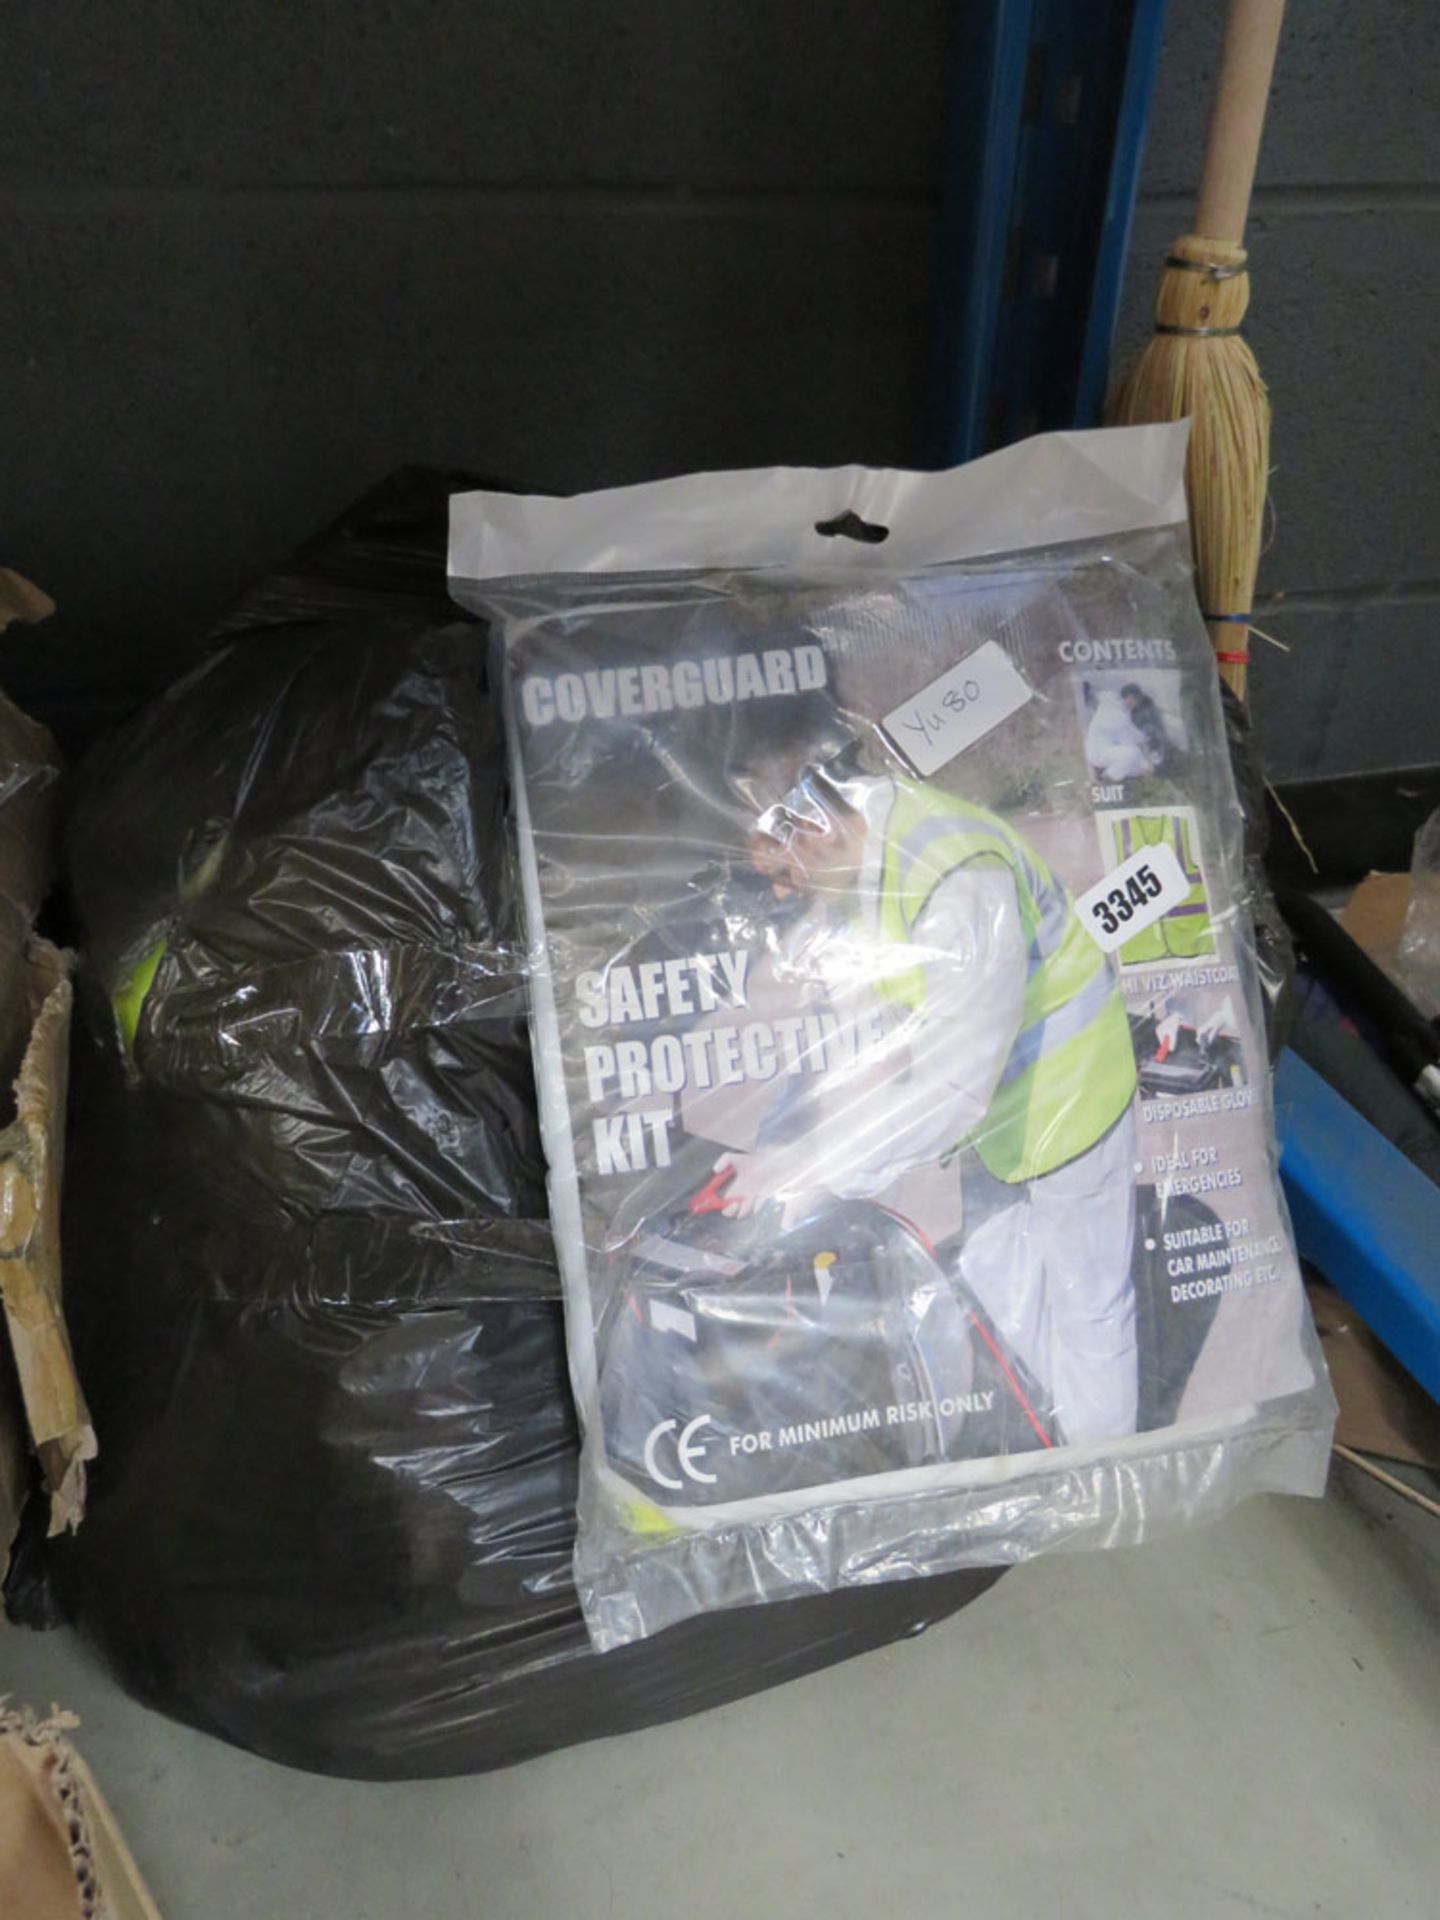 3416 Bag of safety protection kit, Hi Viz jacket, disposable gloves etc